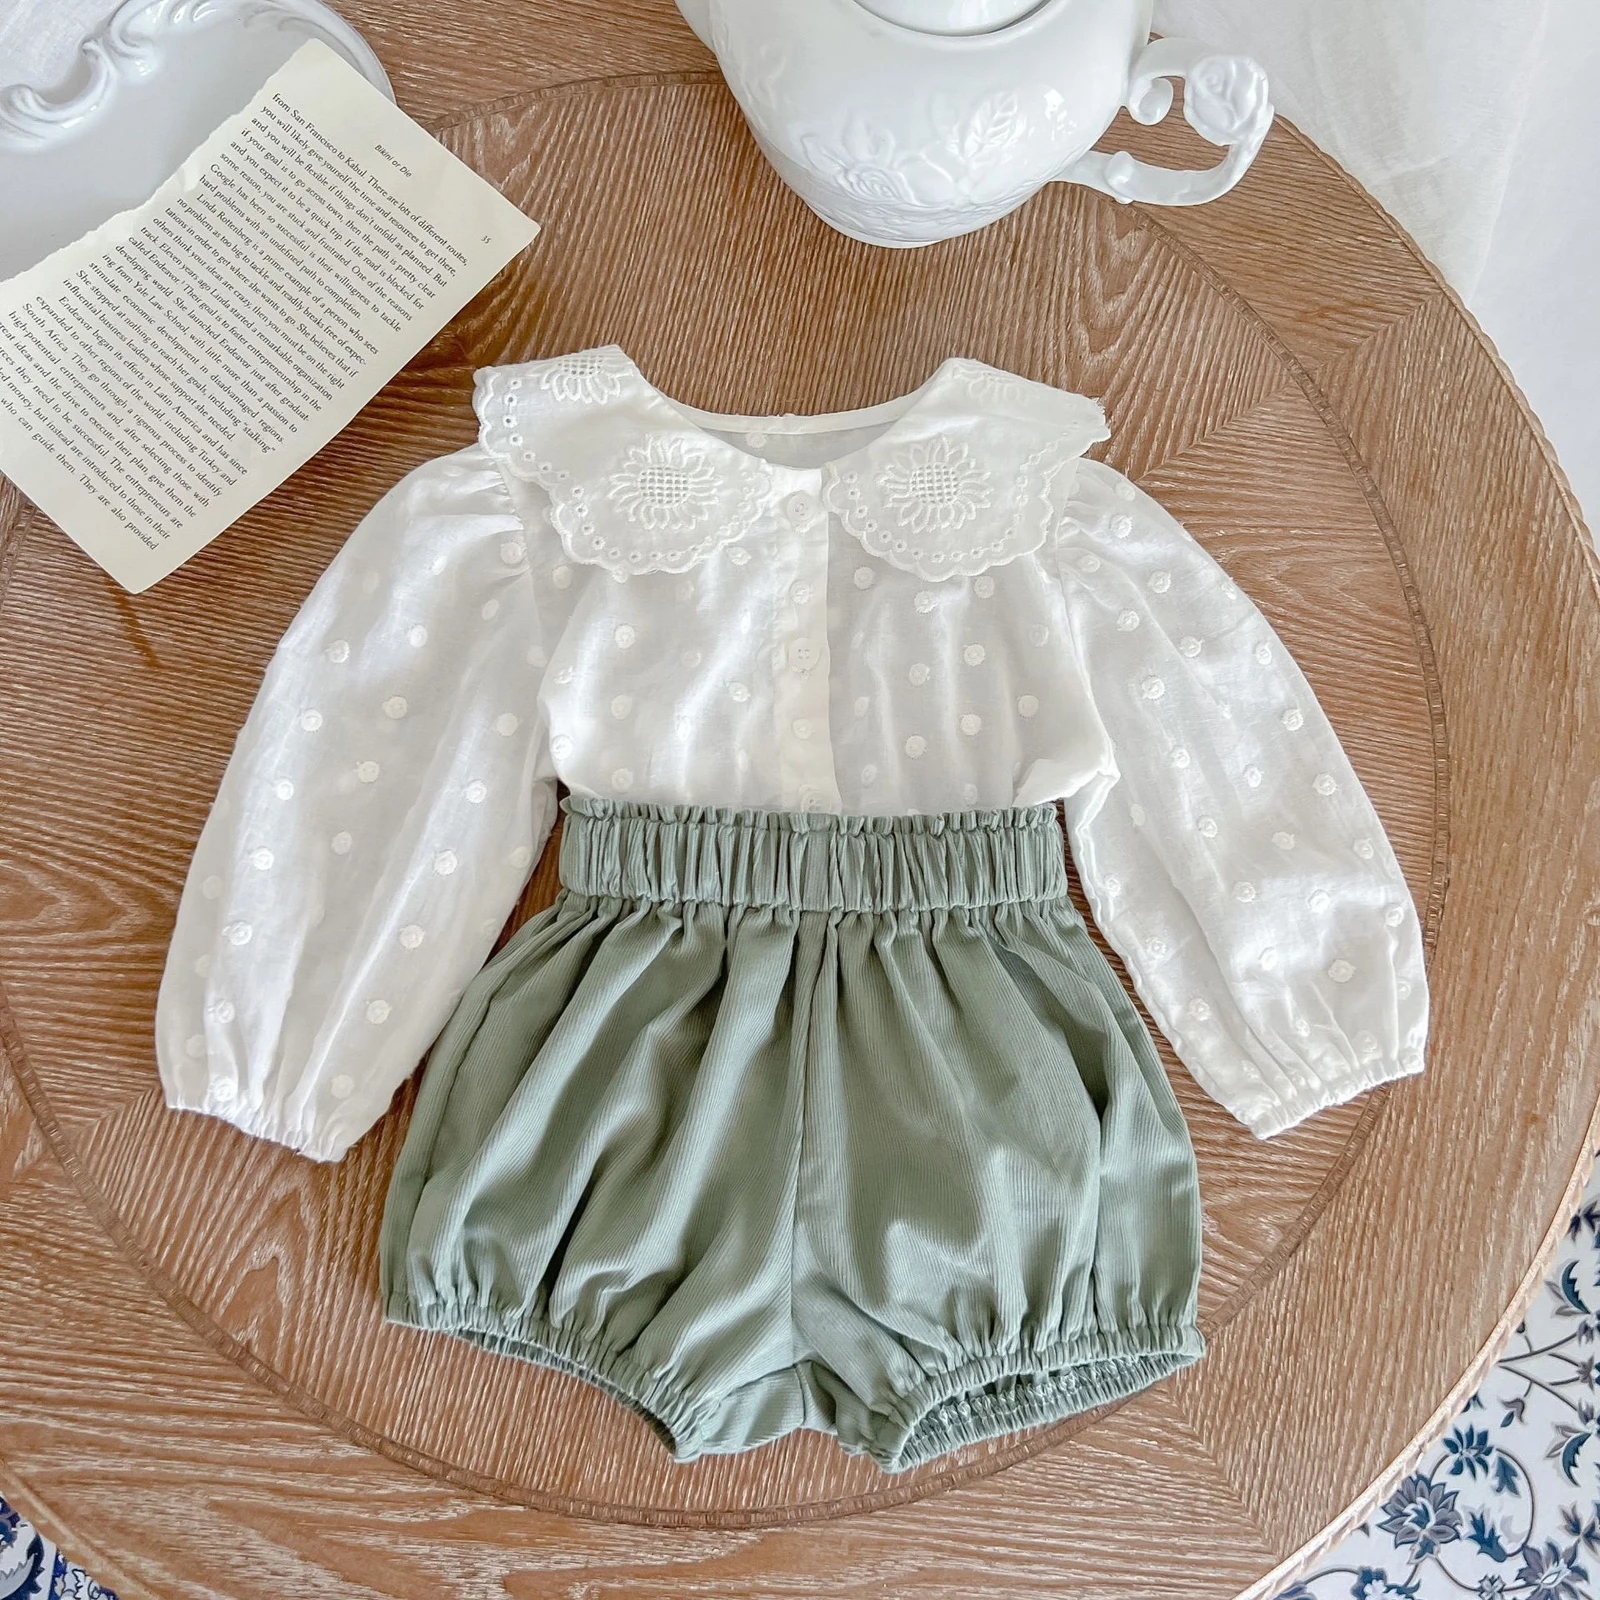 

2pcs Lovely Baby Girls Clothes Sets 0-12M Polka Dot Print Peter Pan Collar Long Sleeve Single Breasted Shirts+Shorts